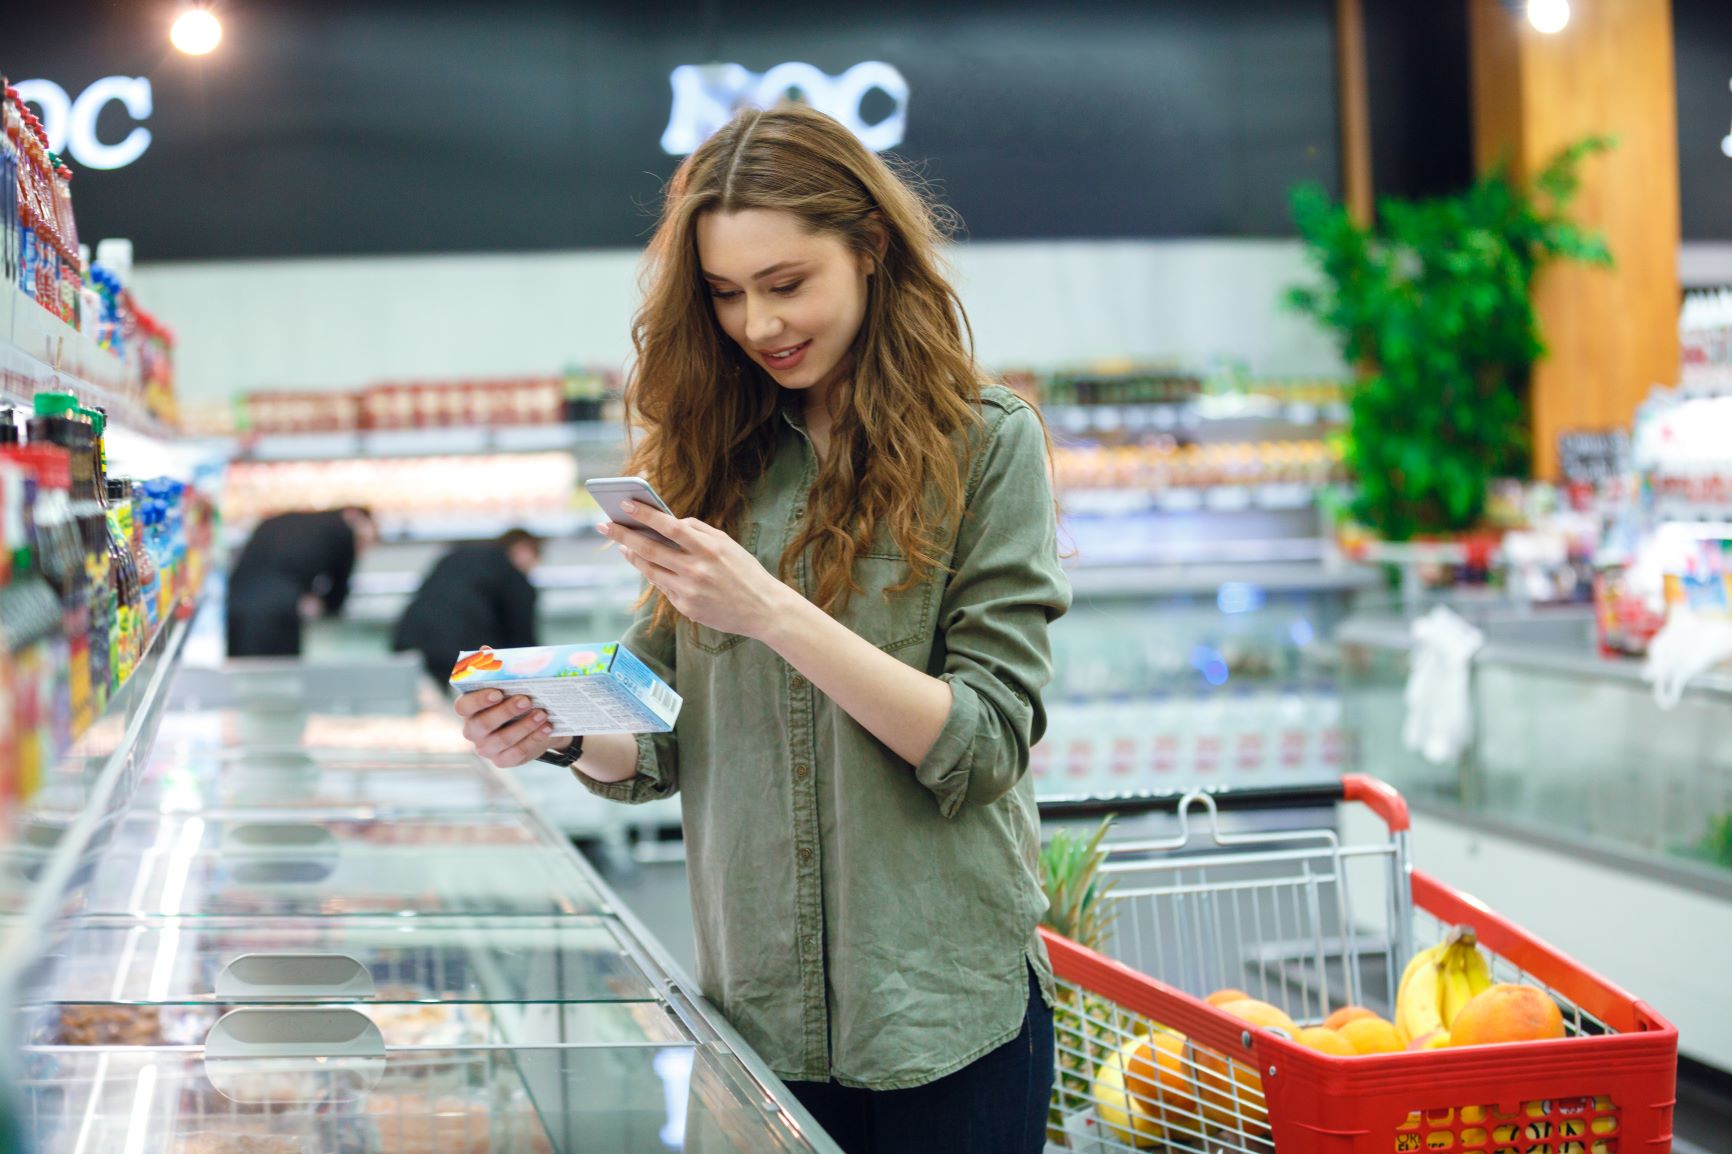 Eine Frau scannt in einem Supermarkt mit ihrem Smartphone ein Produkt aus der Tiefkühltruhe.